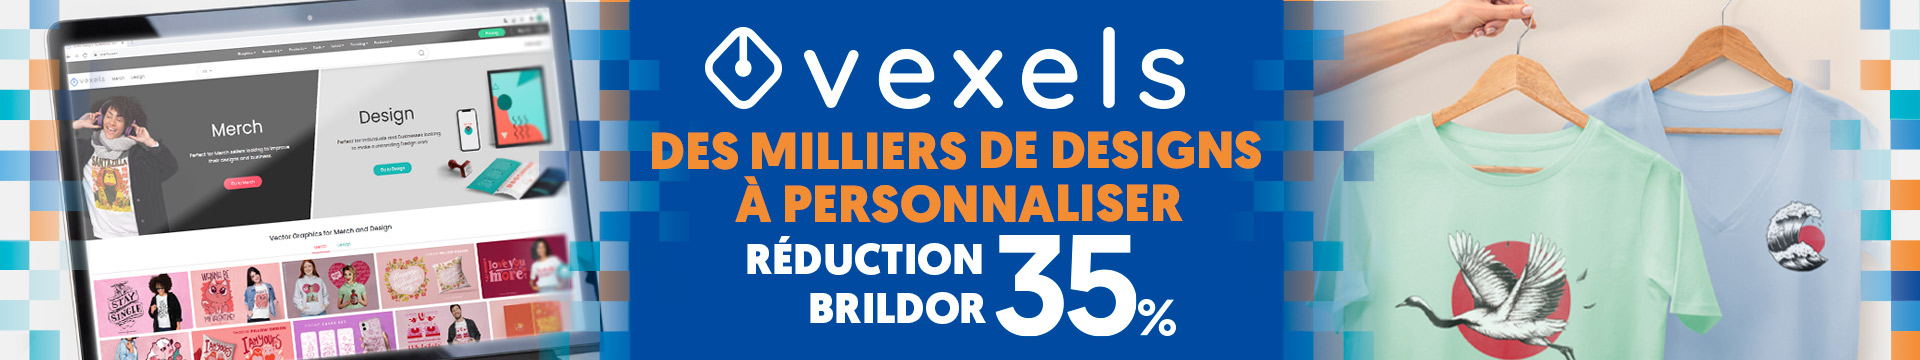 Promotion Vexels: Des milliers de designs à personnaliser - Réduction Brildor 35%